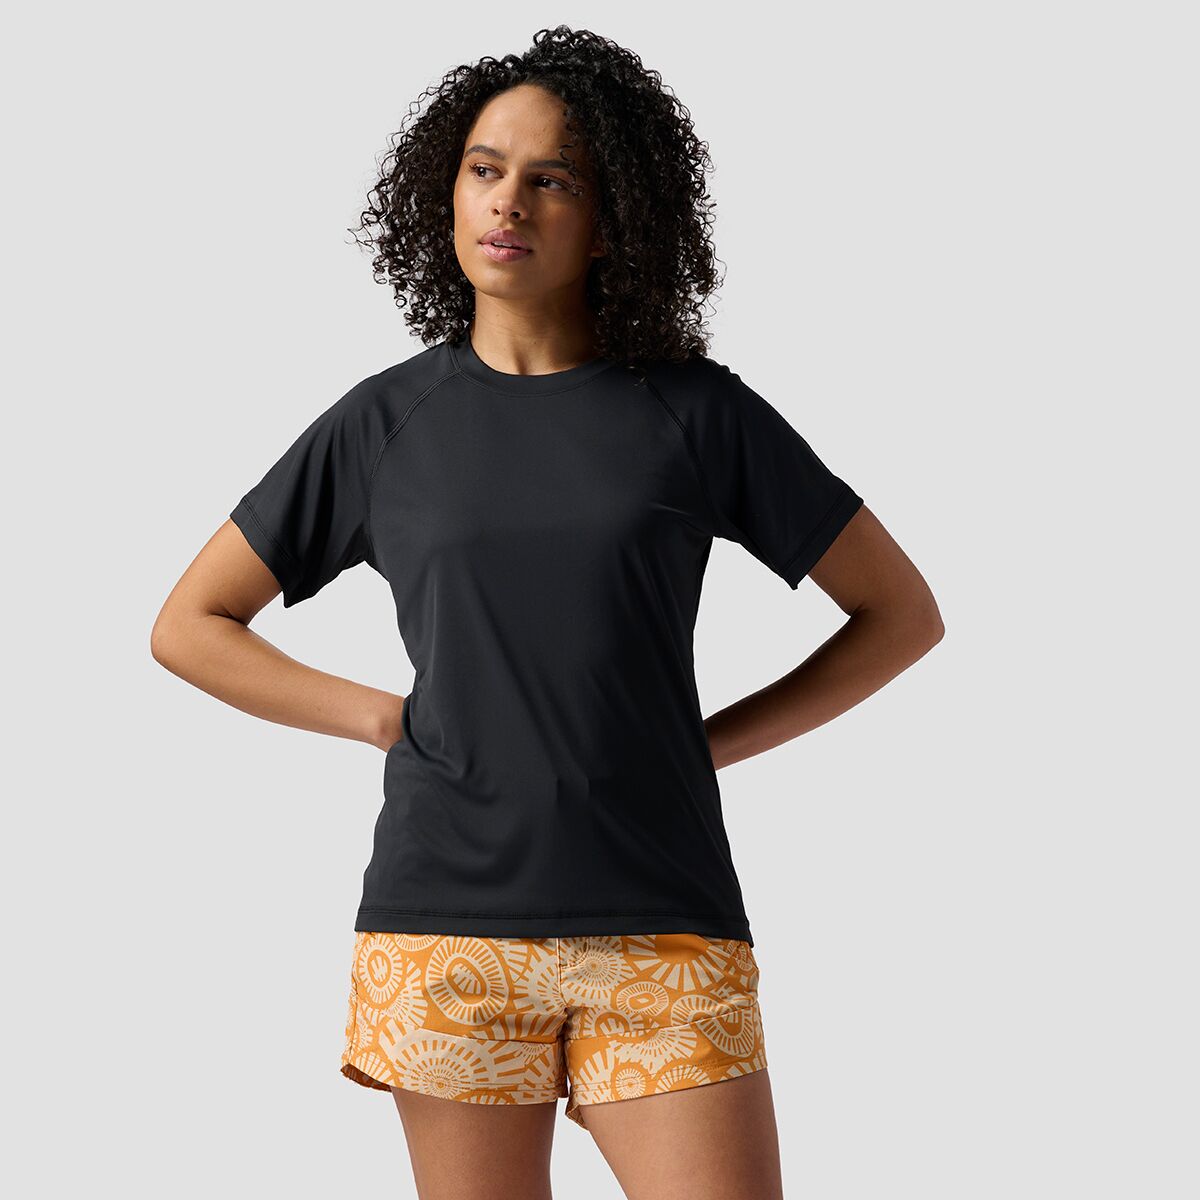 Short-Sleeve Tech T-Shirt - Women